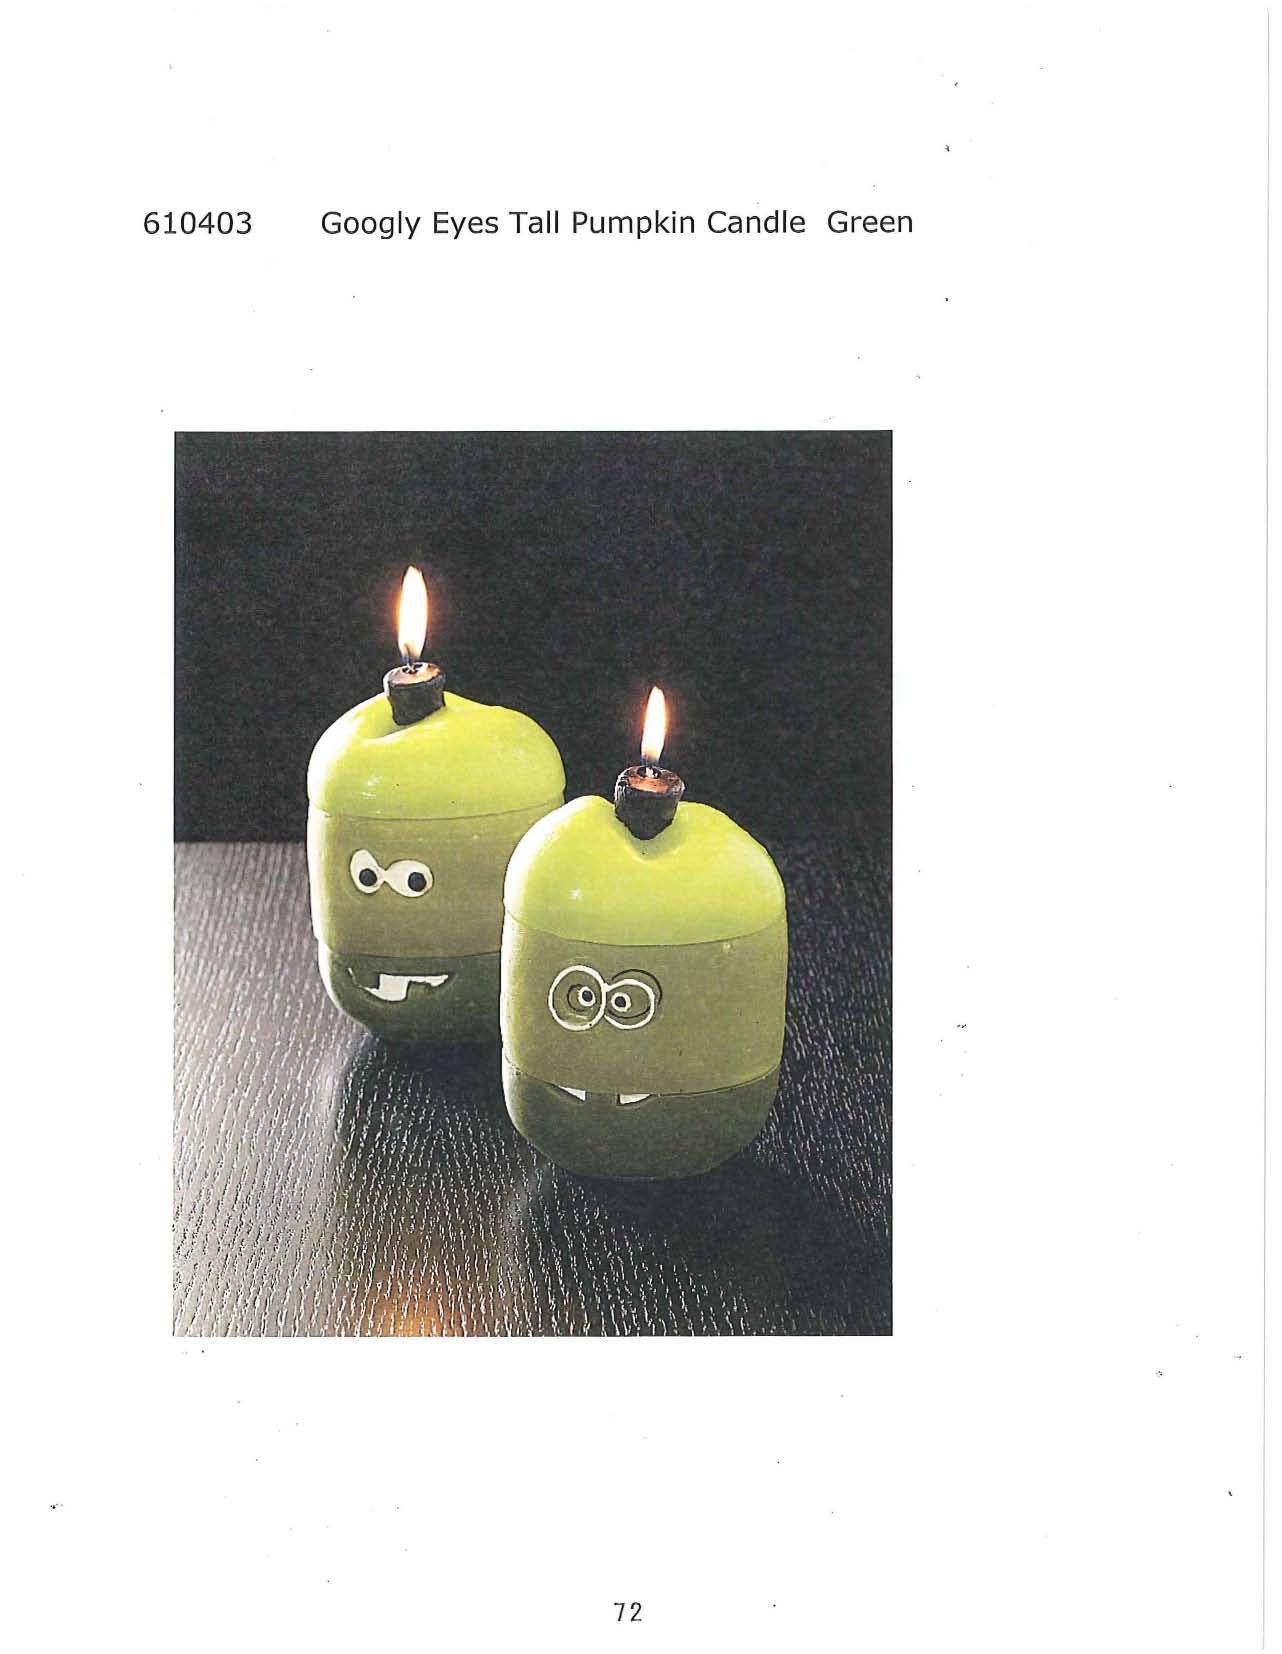 Googly Eyes Tall Pumpkin Candle - Green